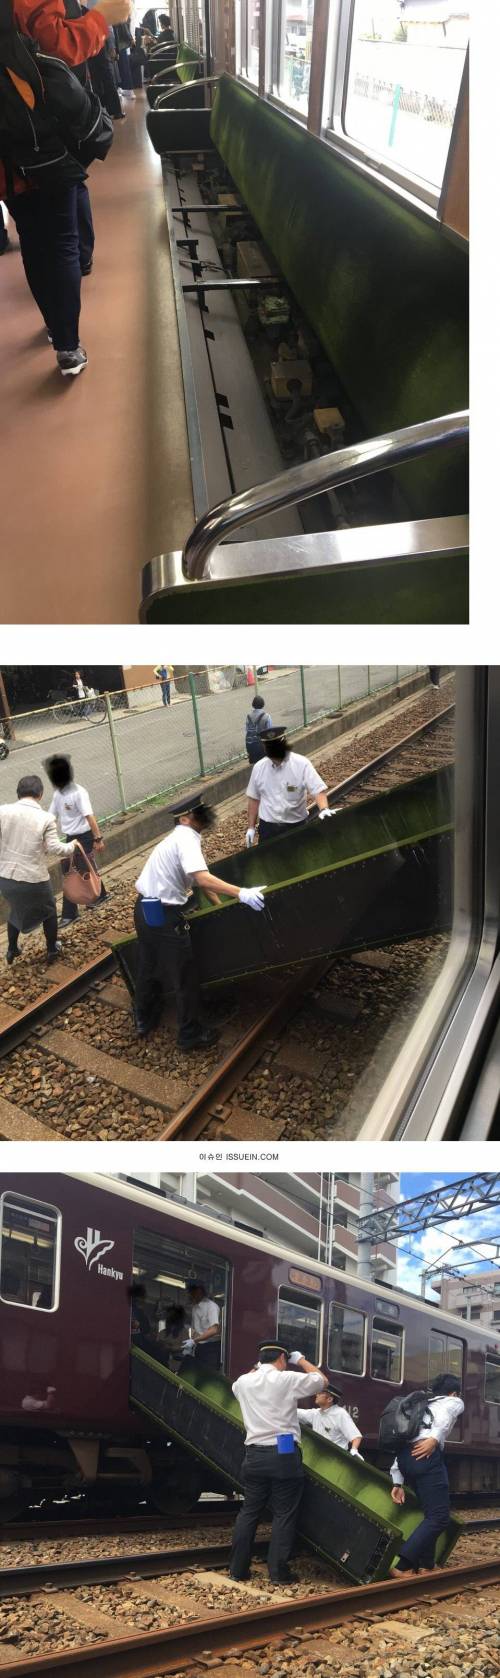 일본 전철에서 지진났을 때 탈출하는 방법